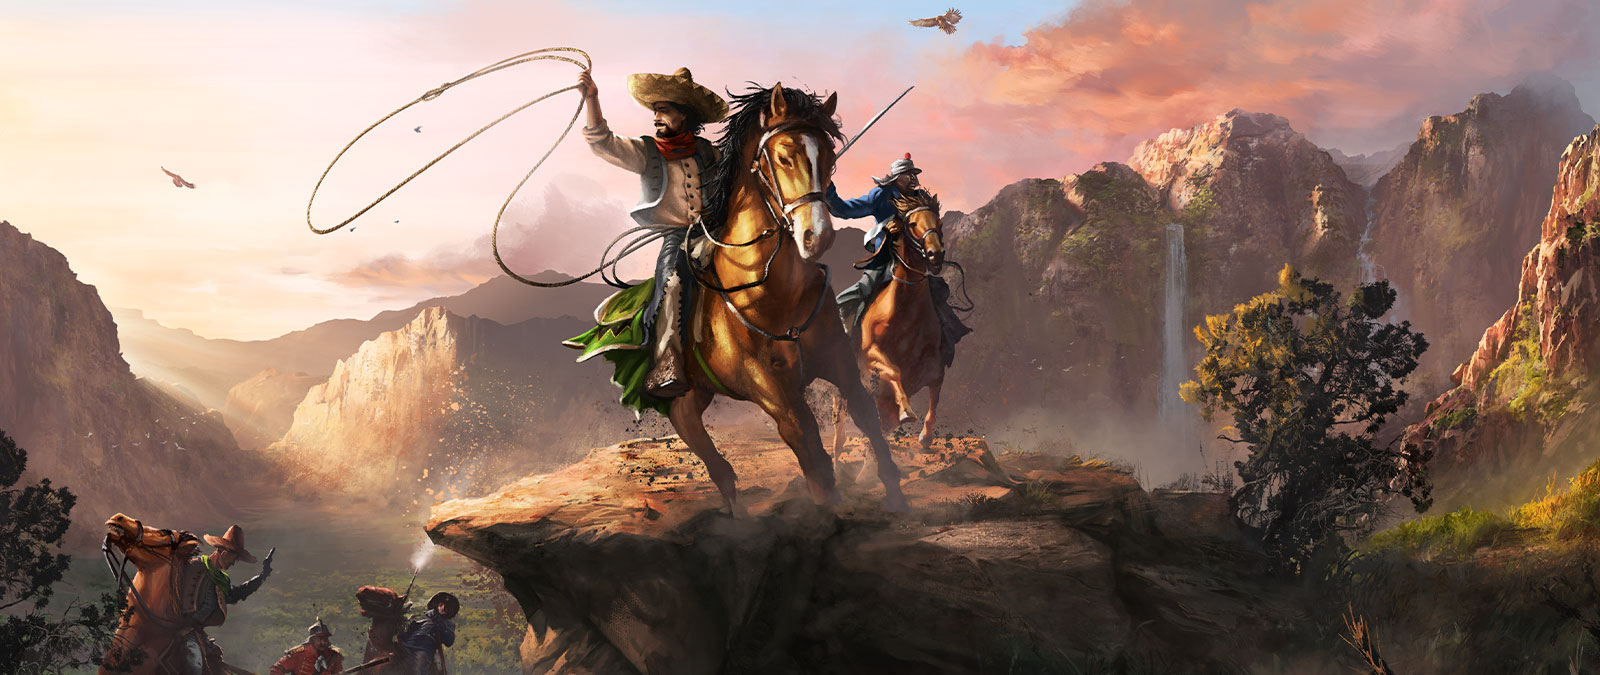 Dvě postavy sedí na koních ve velkém údolí a drží laso a meč.